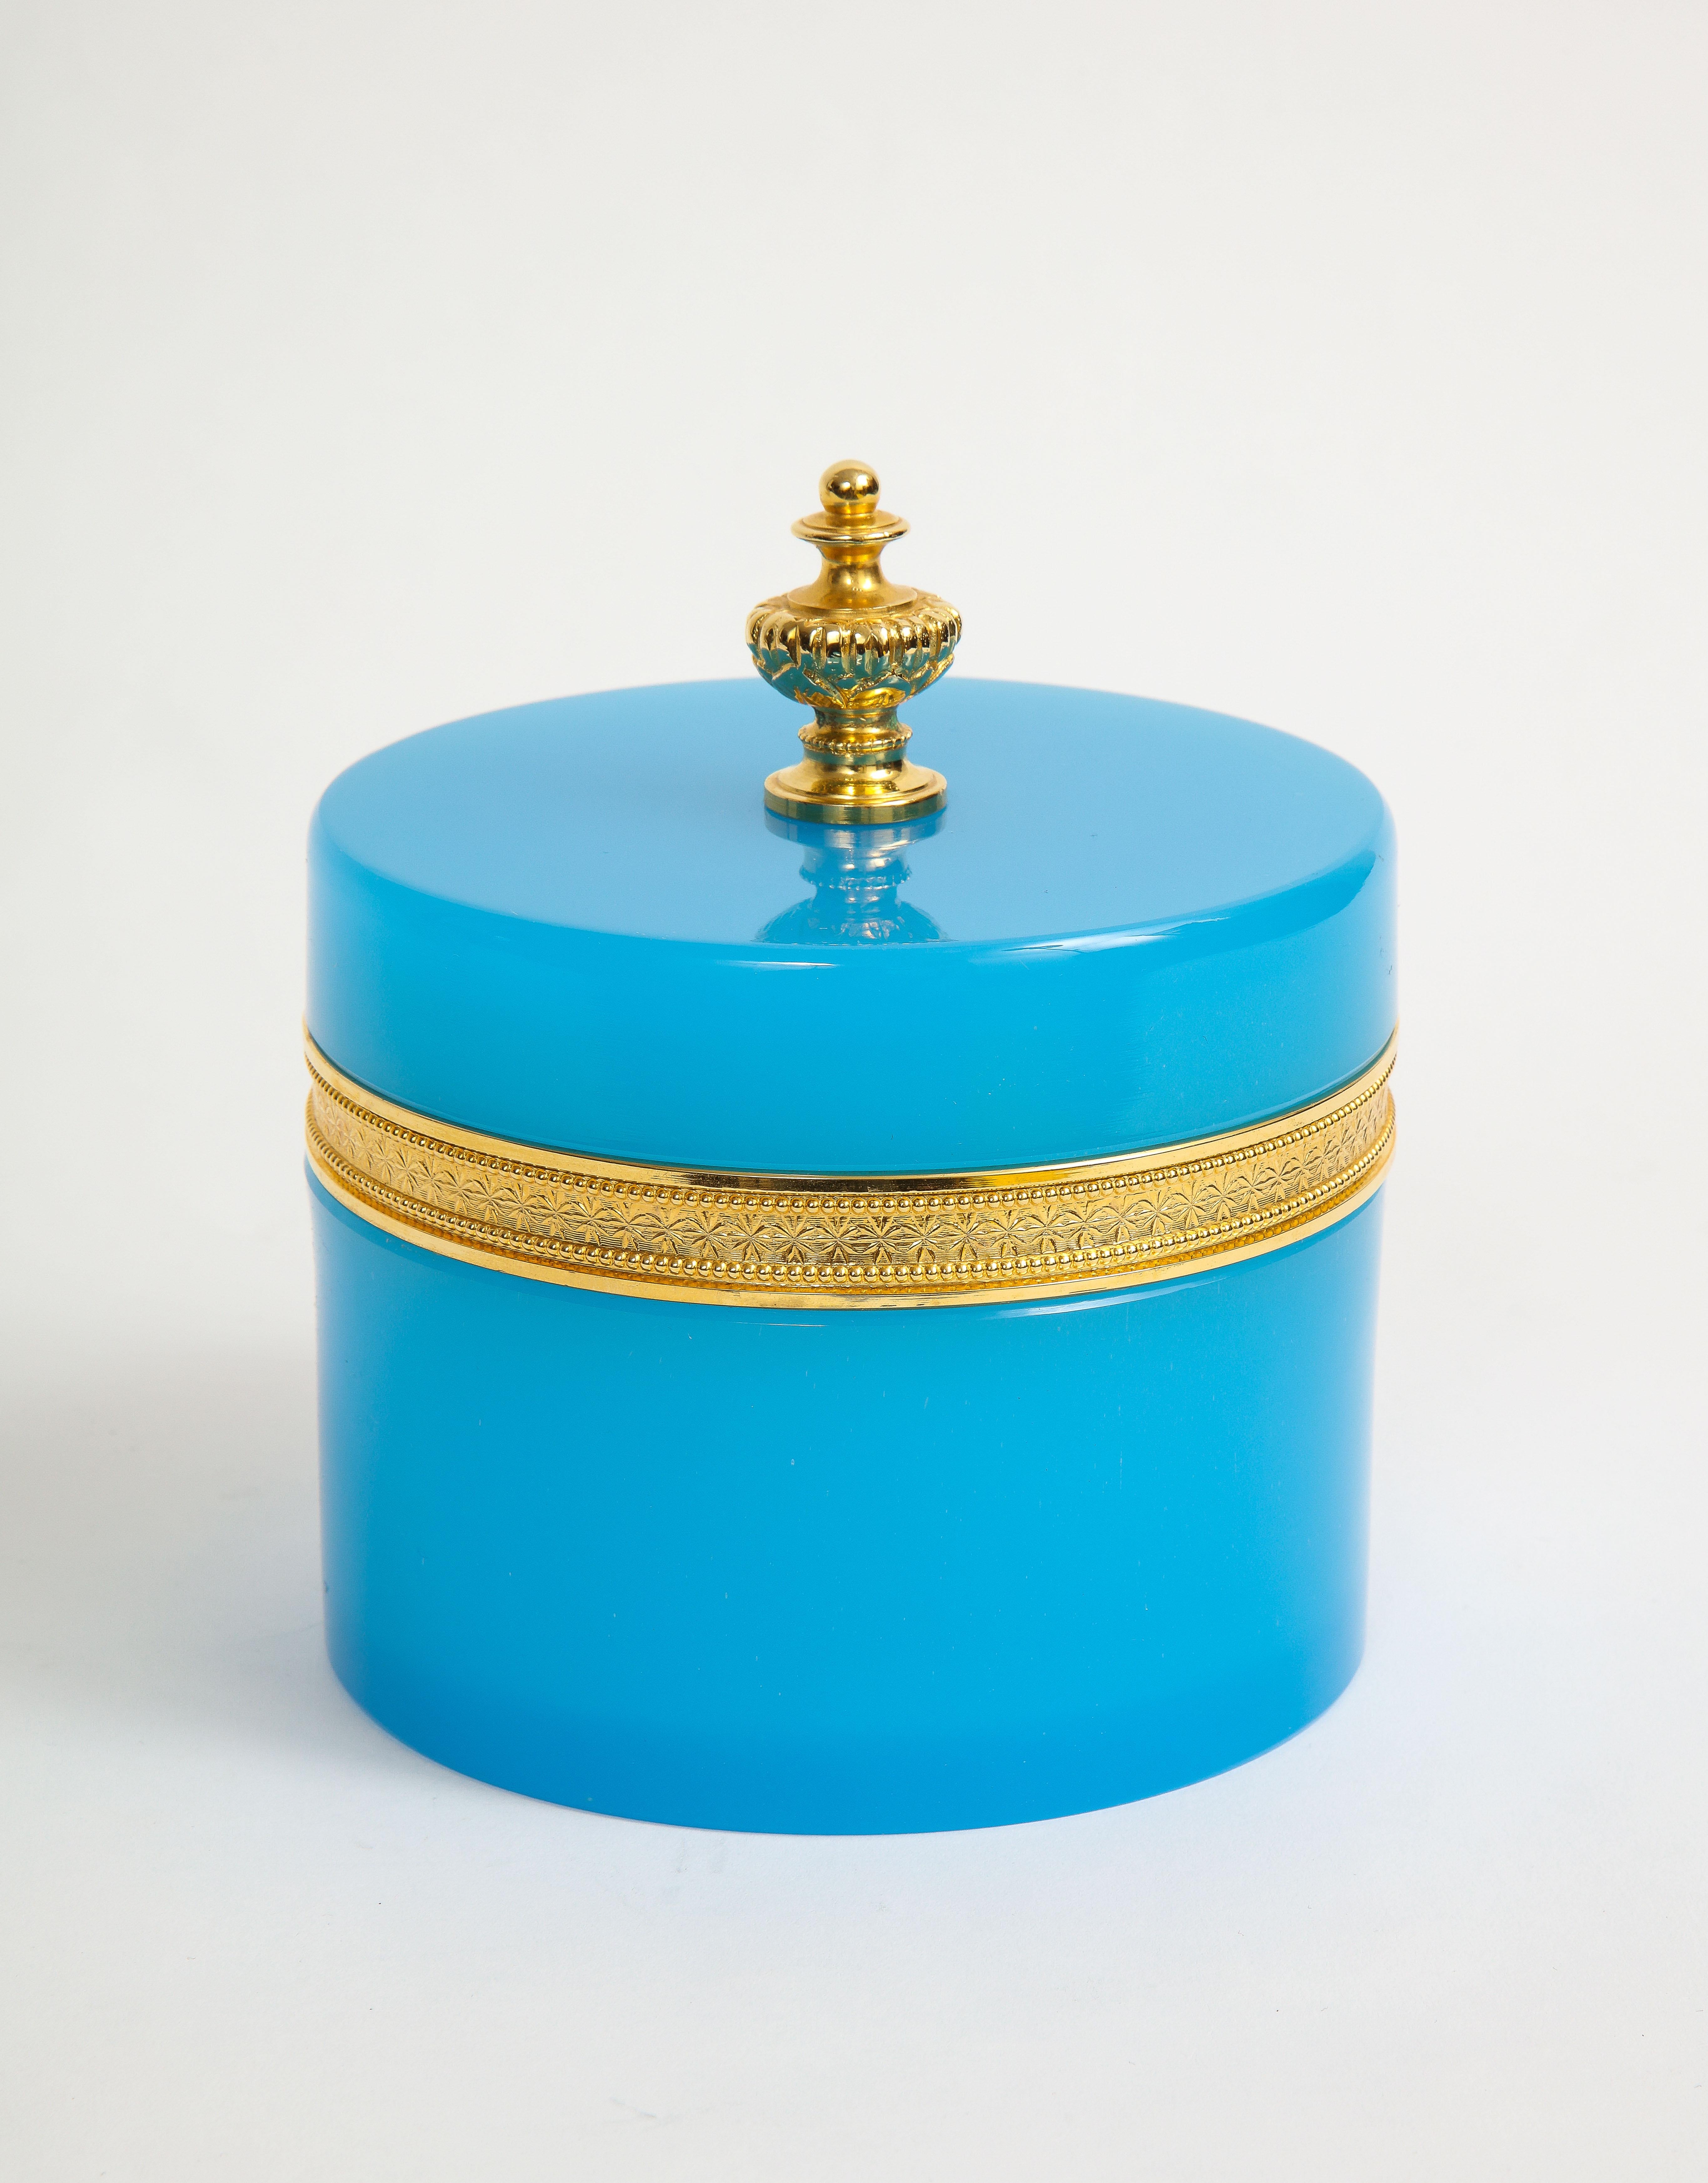 Eine französische Dore-Bronze montiert blau opaleszierend und Dore-Bronze finial abgedeckt Box. Diese runde Dose ist sehr ungewöhnlich mit einer blau-opalisierenden Farbe und einer dunklen Bronzefassung. Das Oberteil ist mit einem Endstück aus